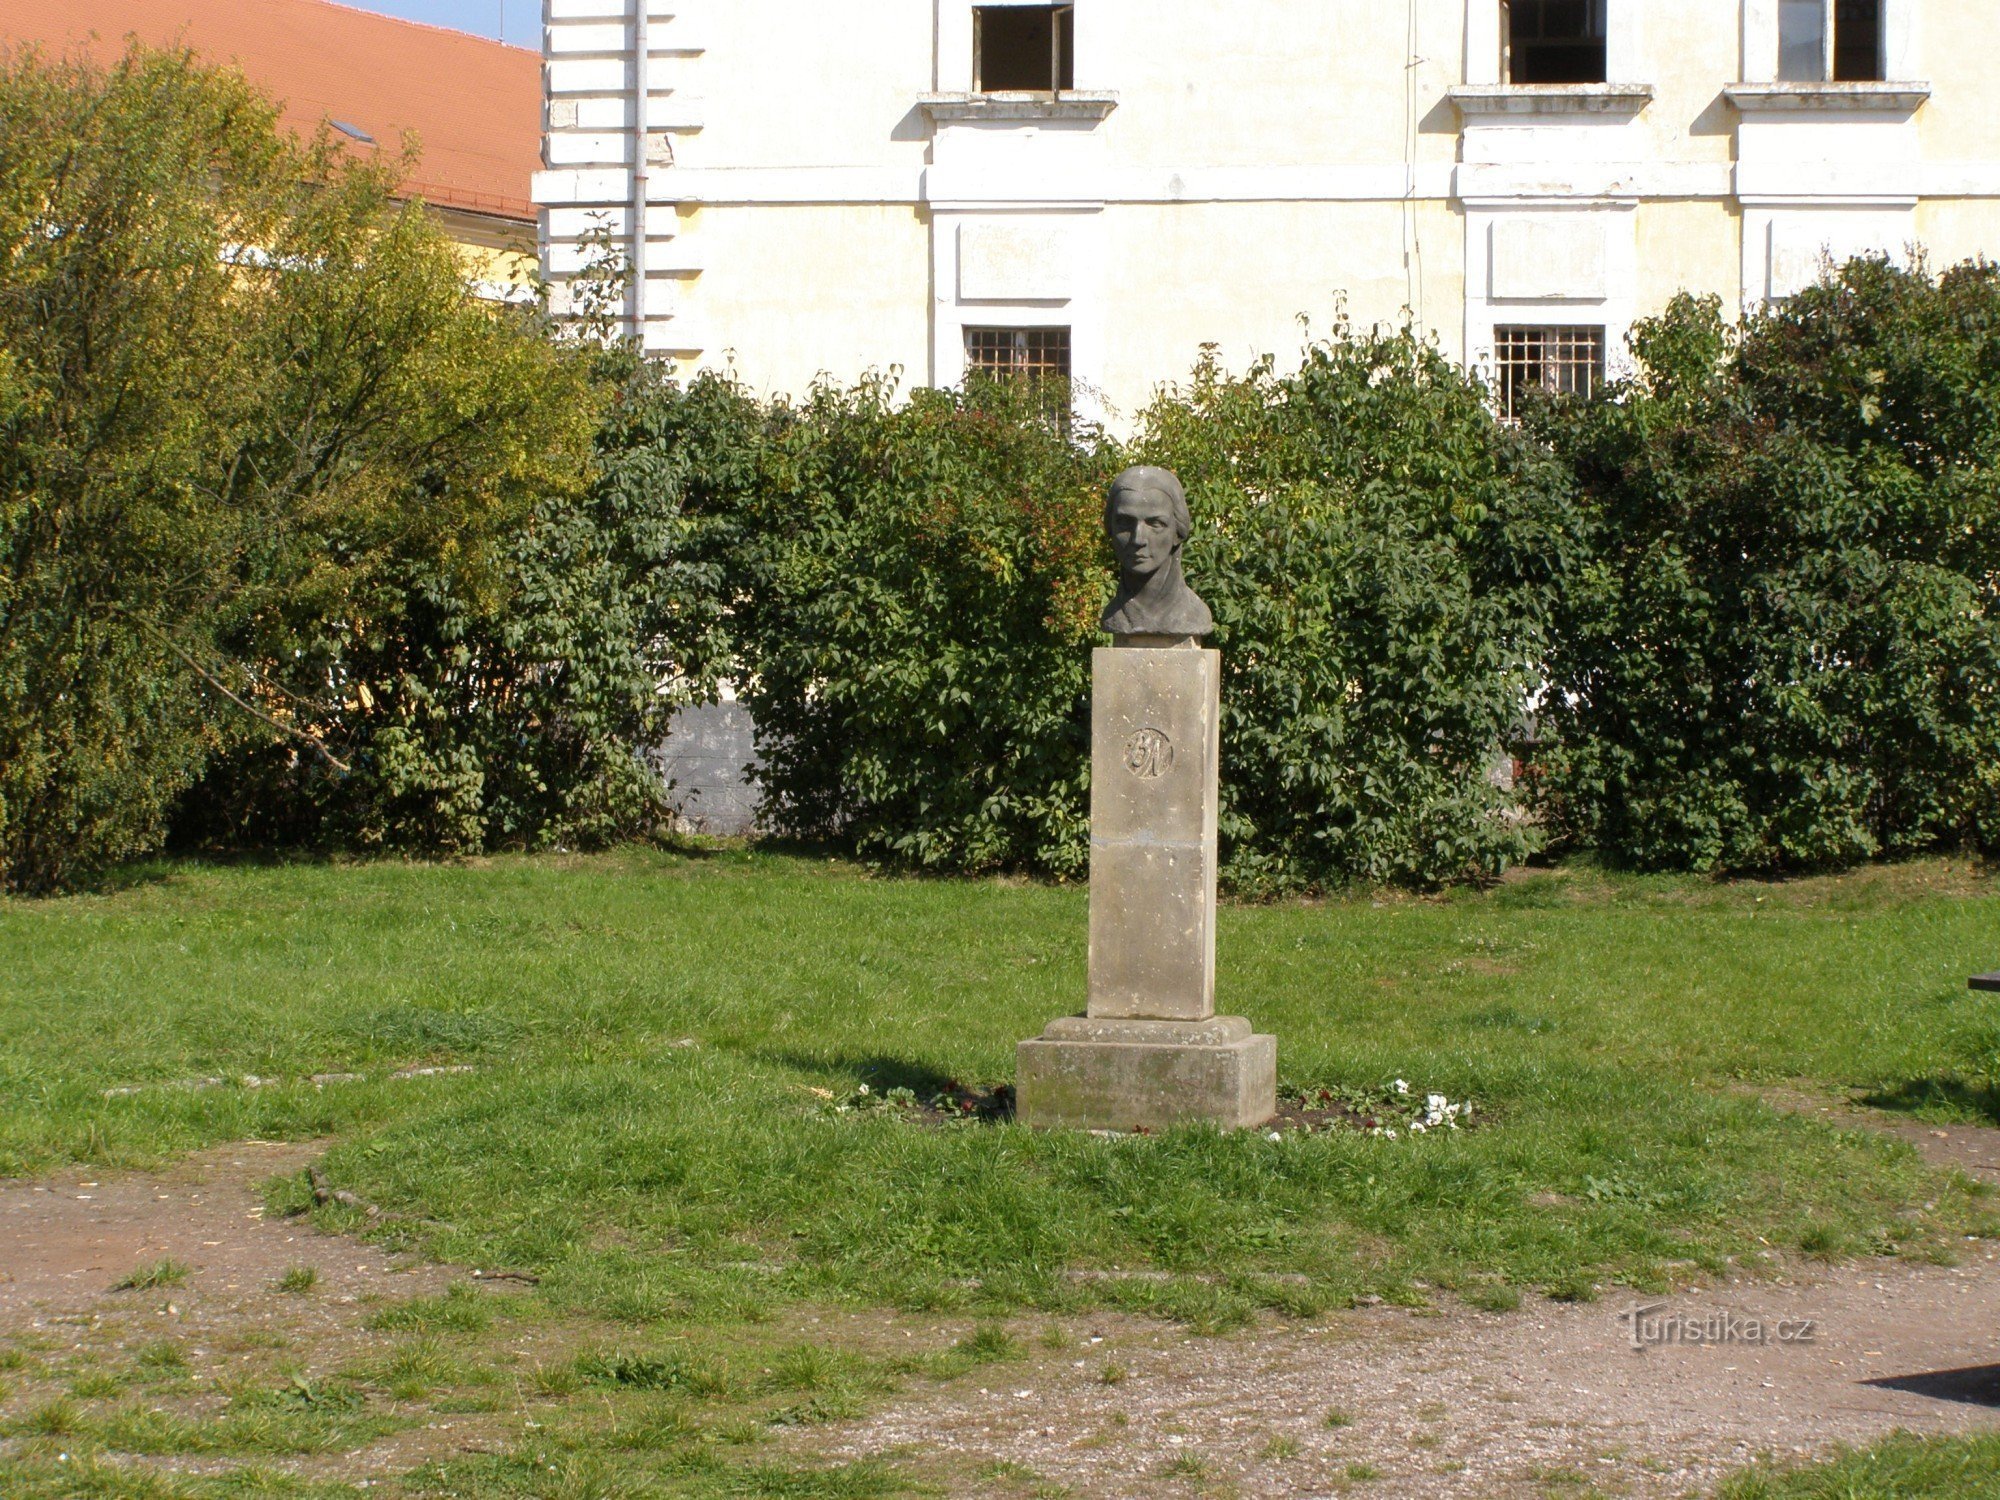 Josefov - spomenik Boženi Němcovoj